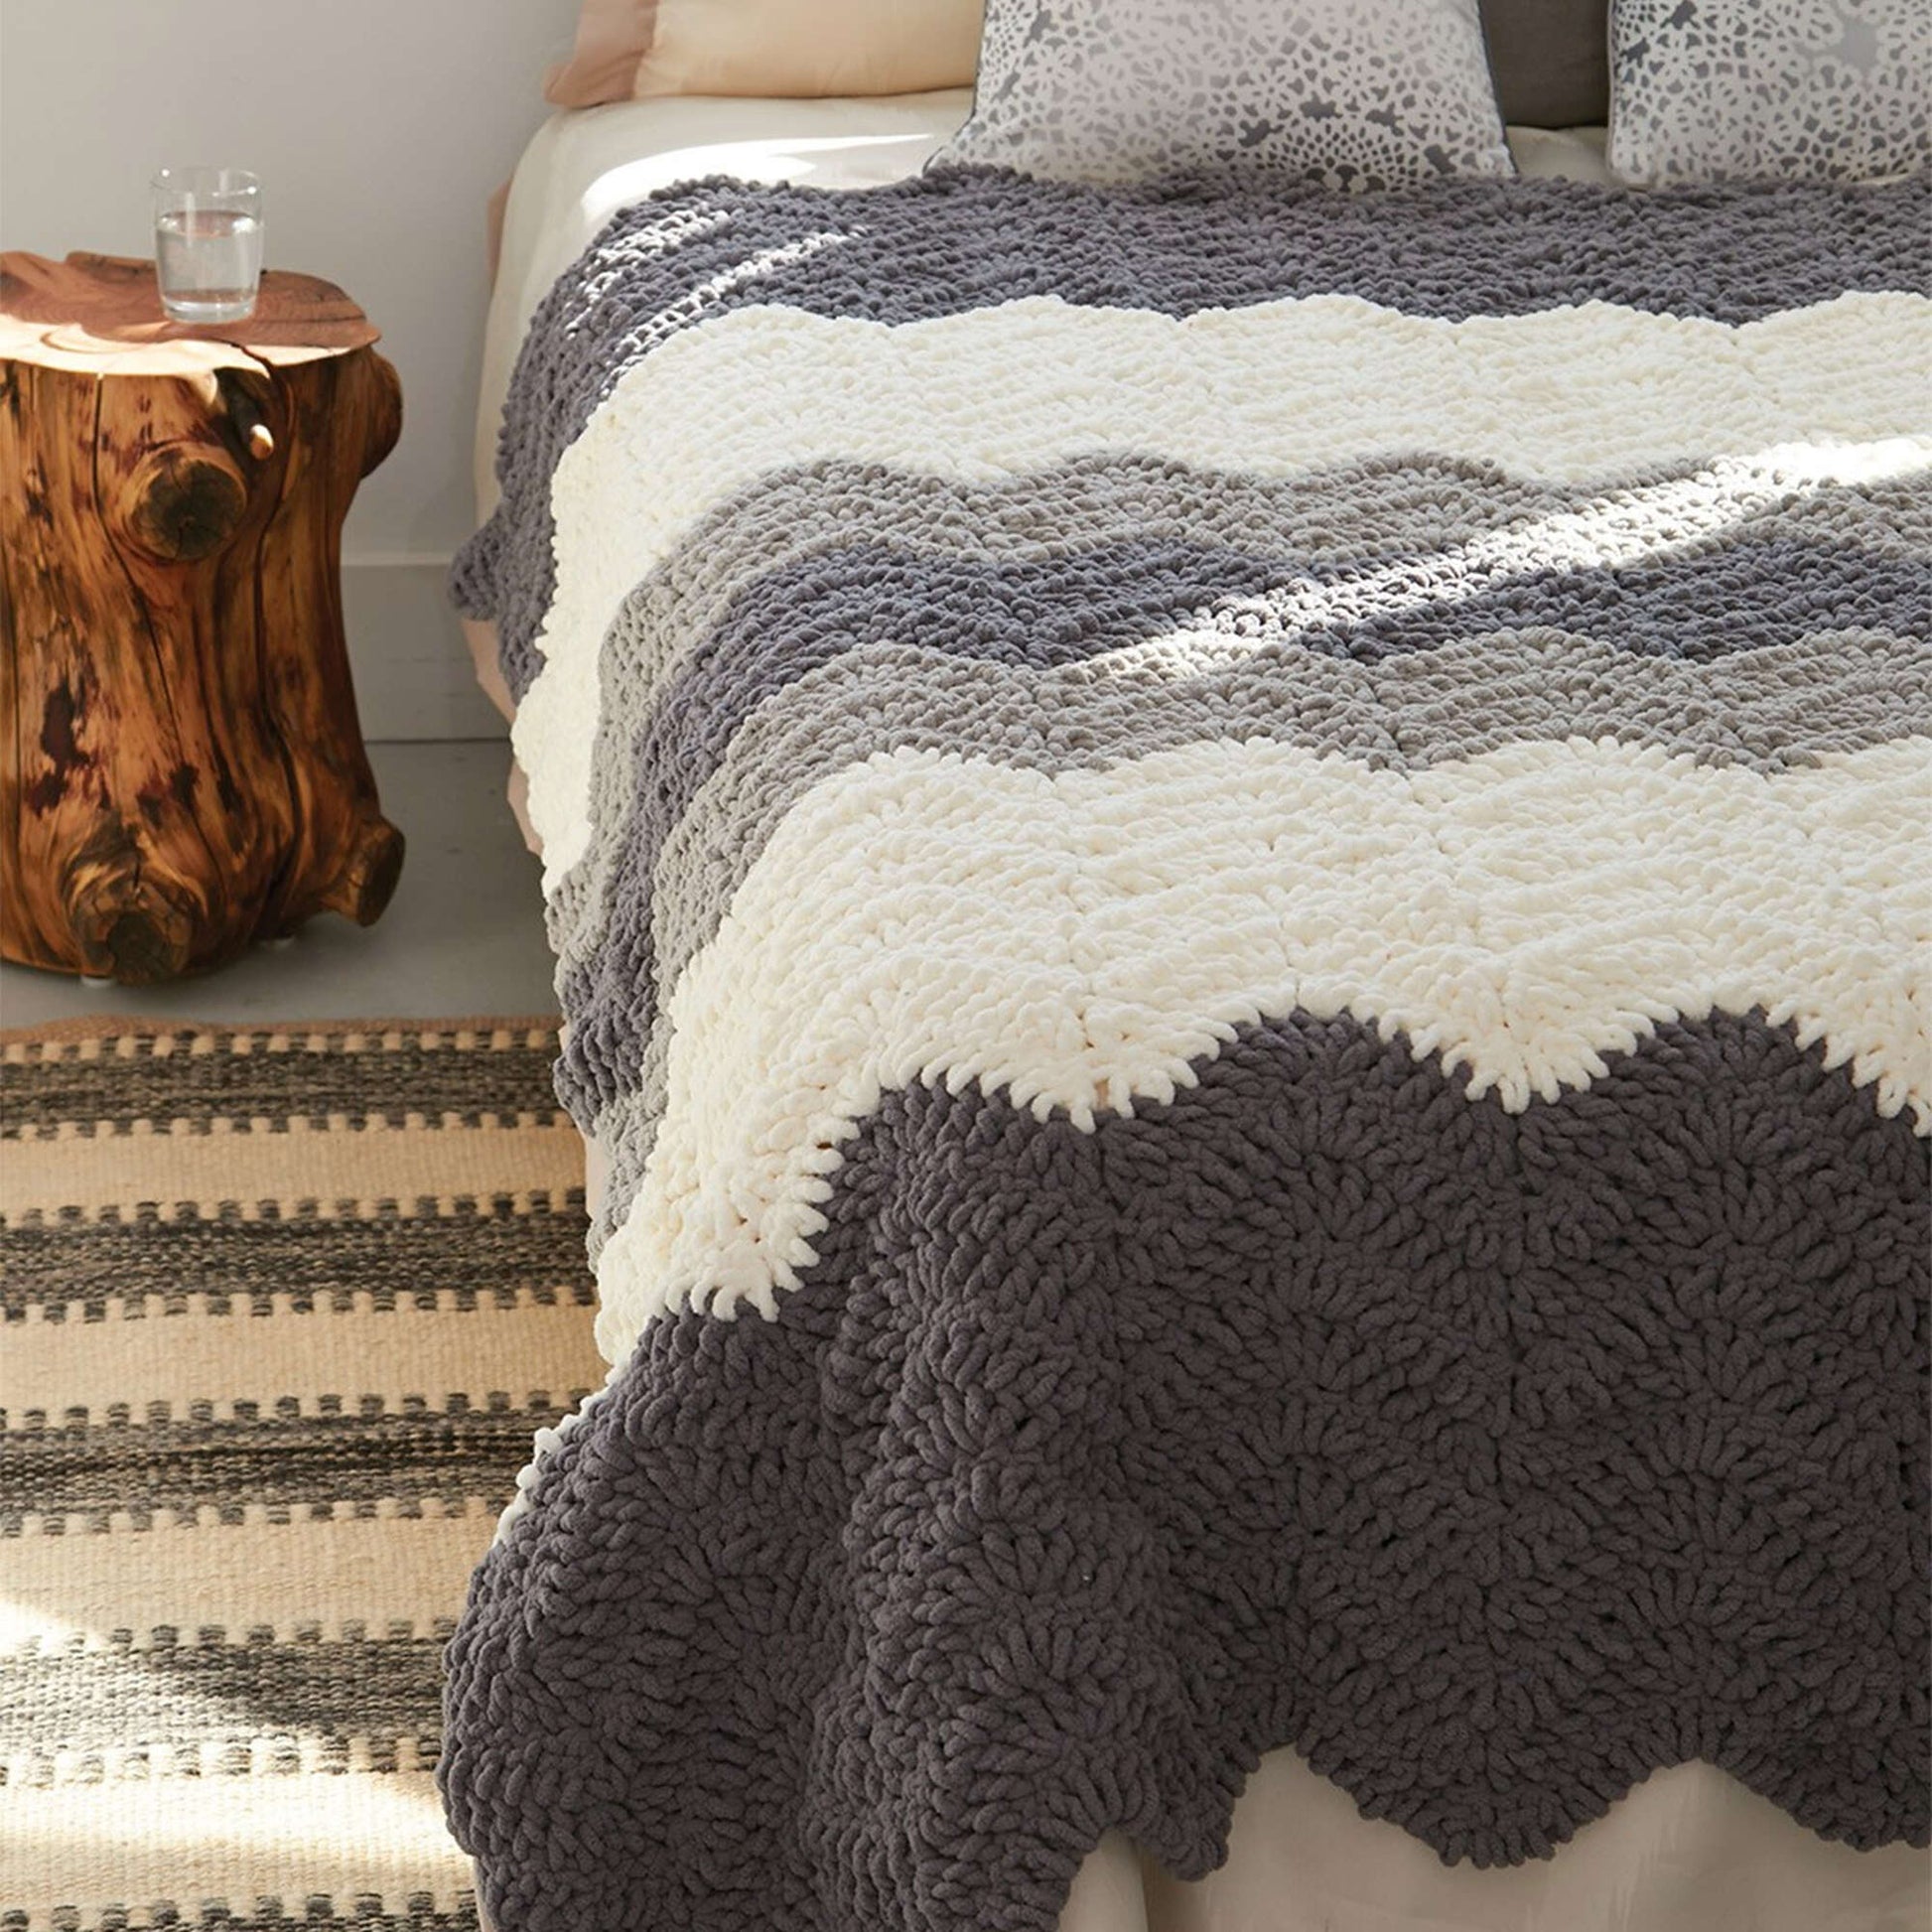 Free Bernat Grey Scale Crochet Blanket Pattern